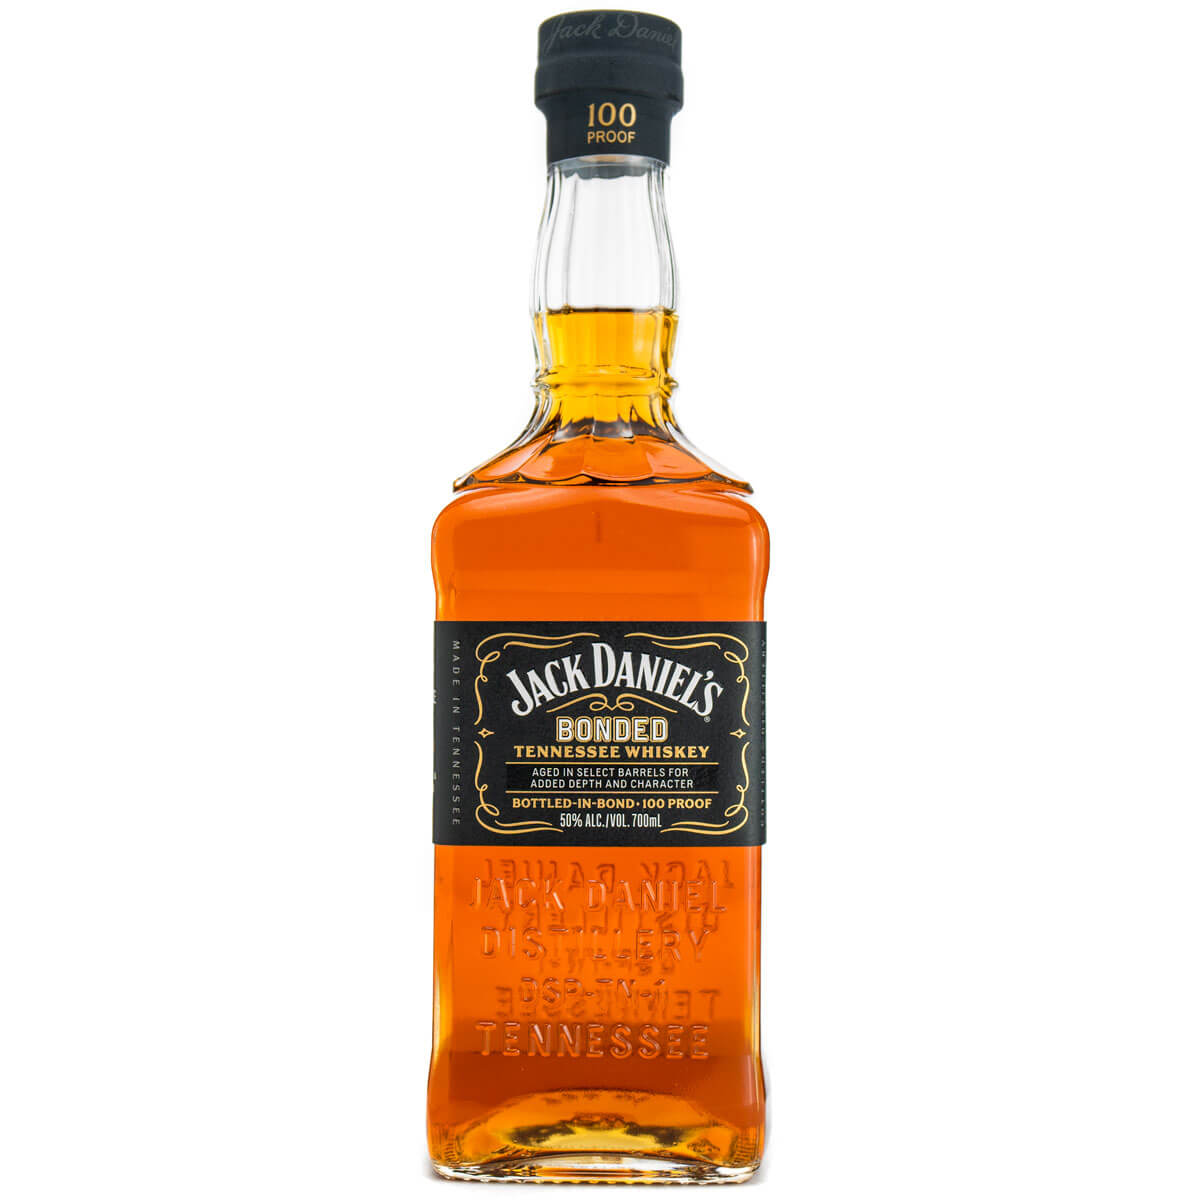 Jack Daniel’s Bonded Tennessee Whiskey bottle